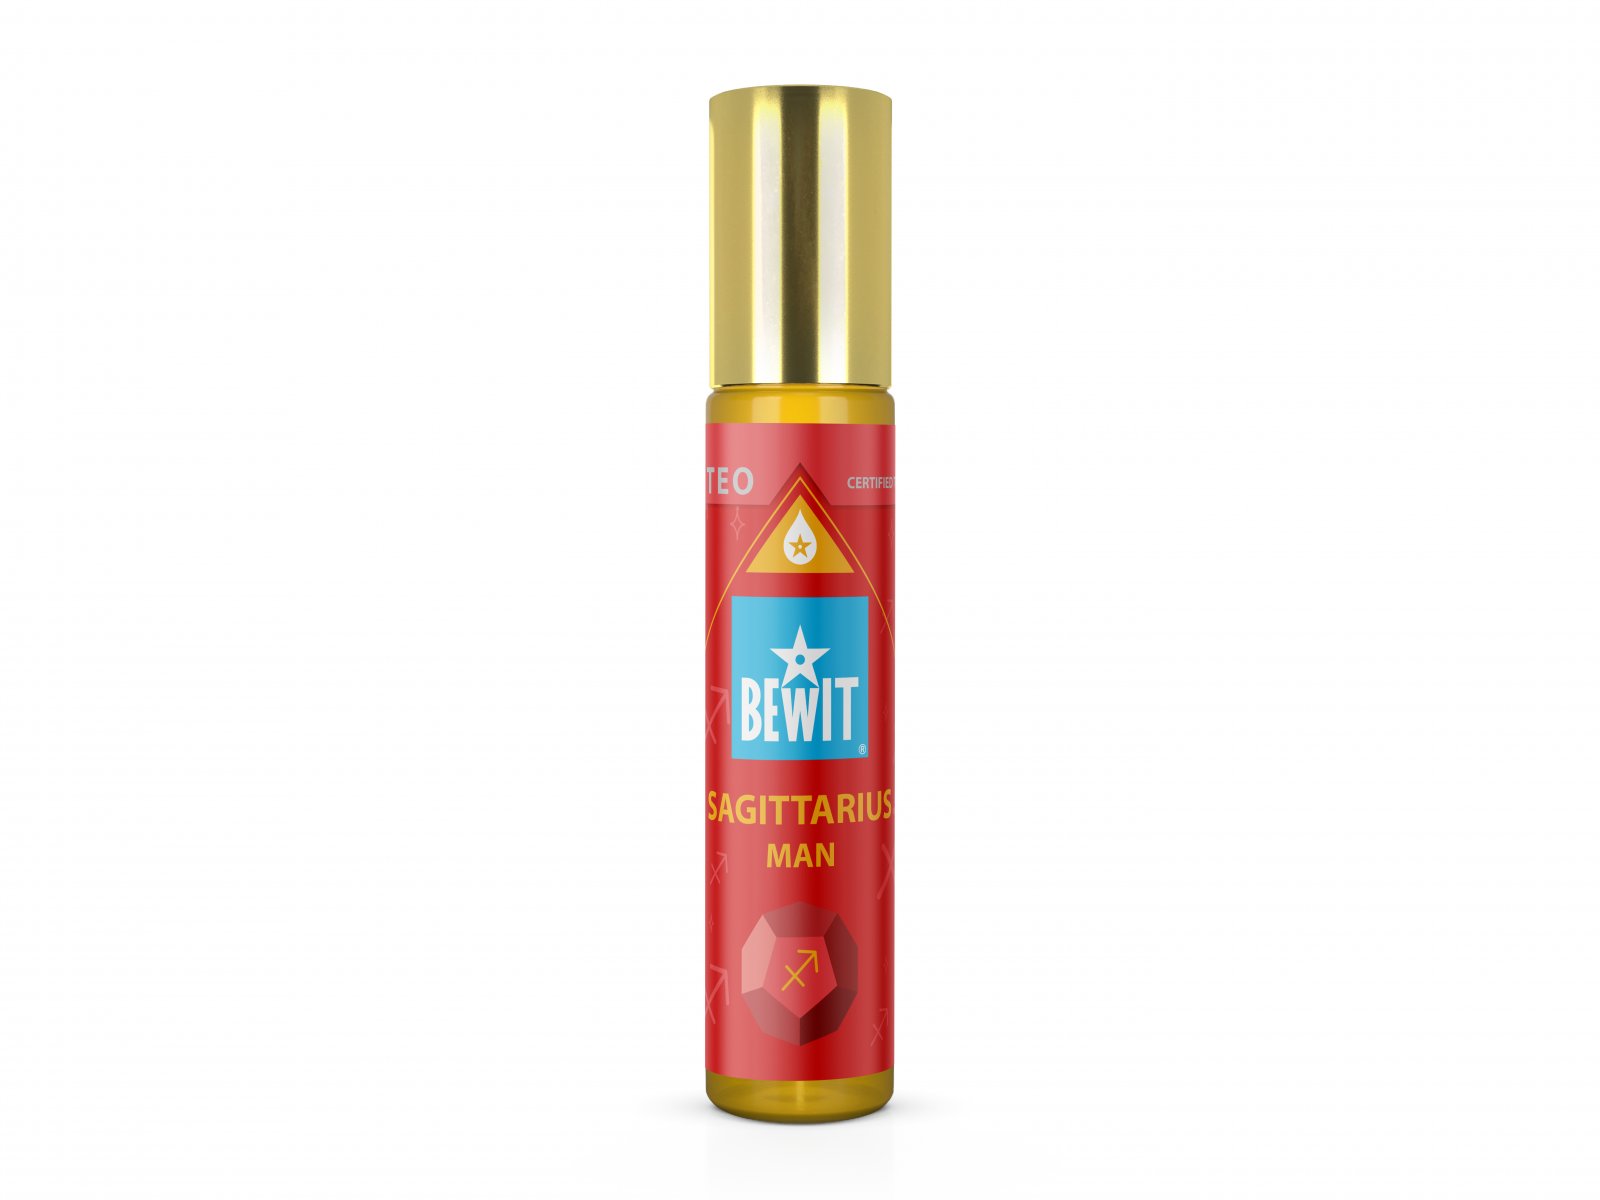 BEWIT MAN SAGITTARIUS (STŘELEC) - Mužský roll-on olejový parfém